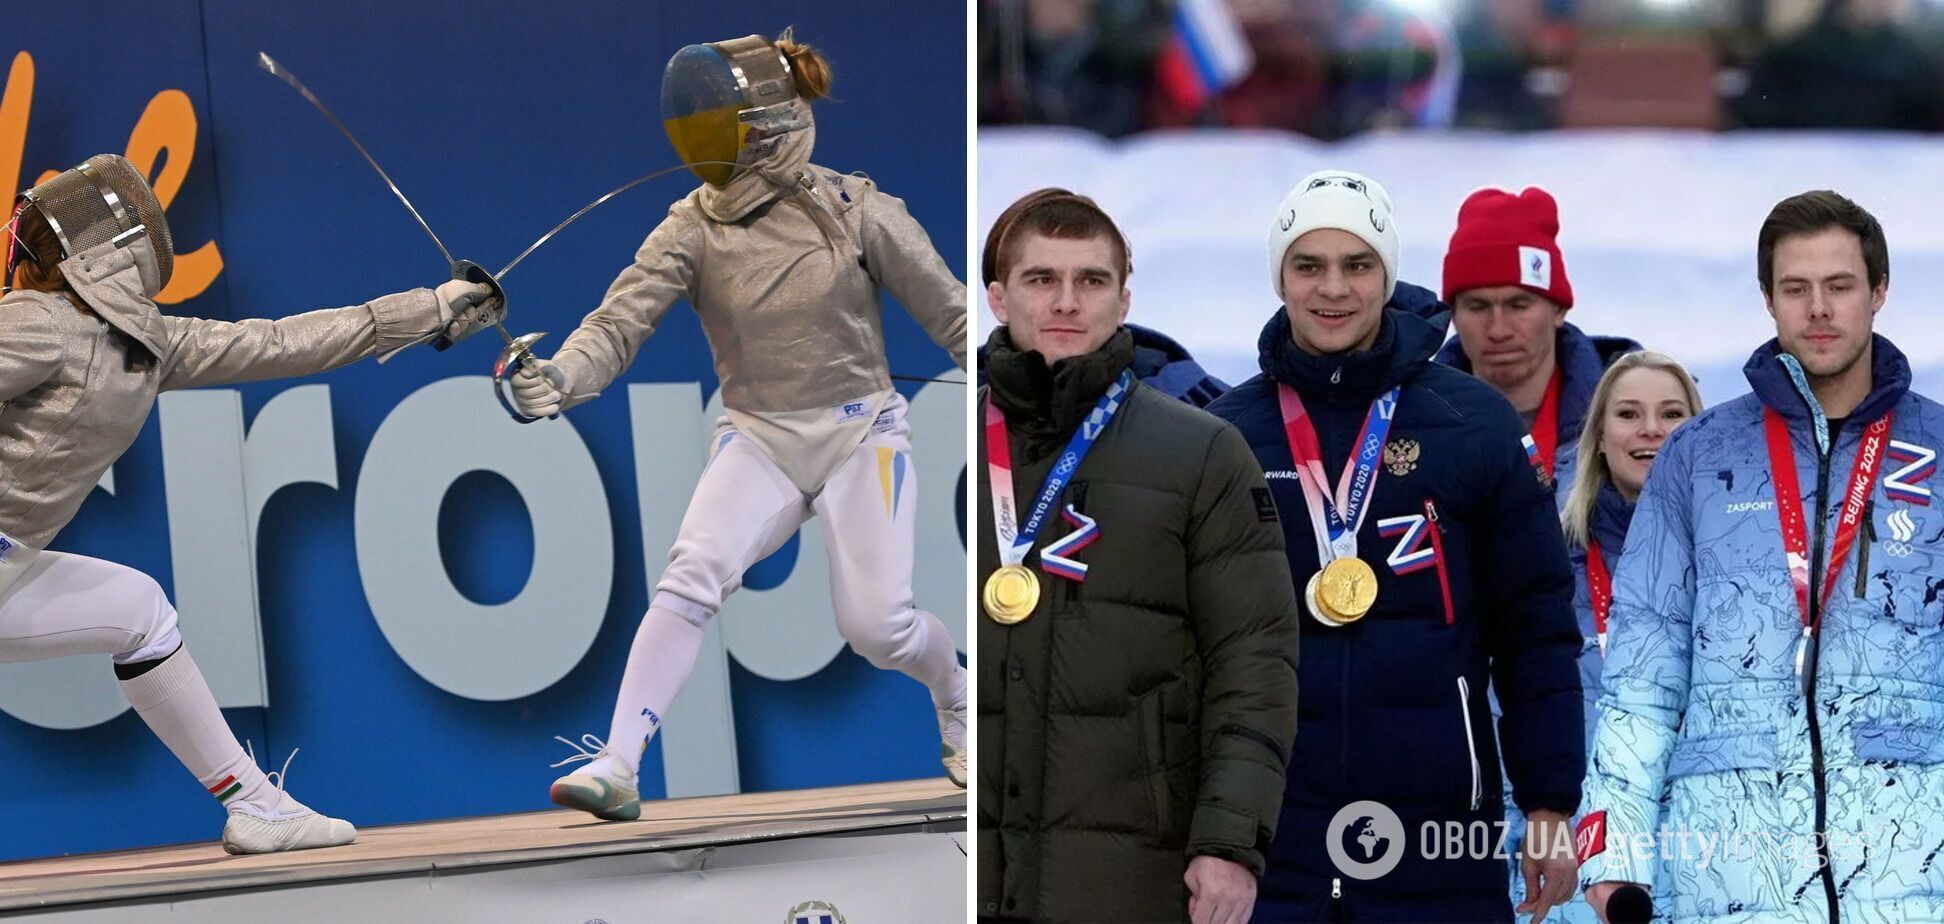 Очередная международная федерация вернула Россию в мировой спорт, "чтобы не нарушать права ее граждан"